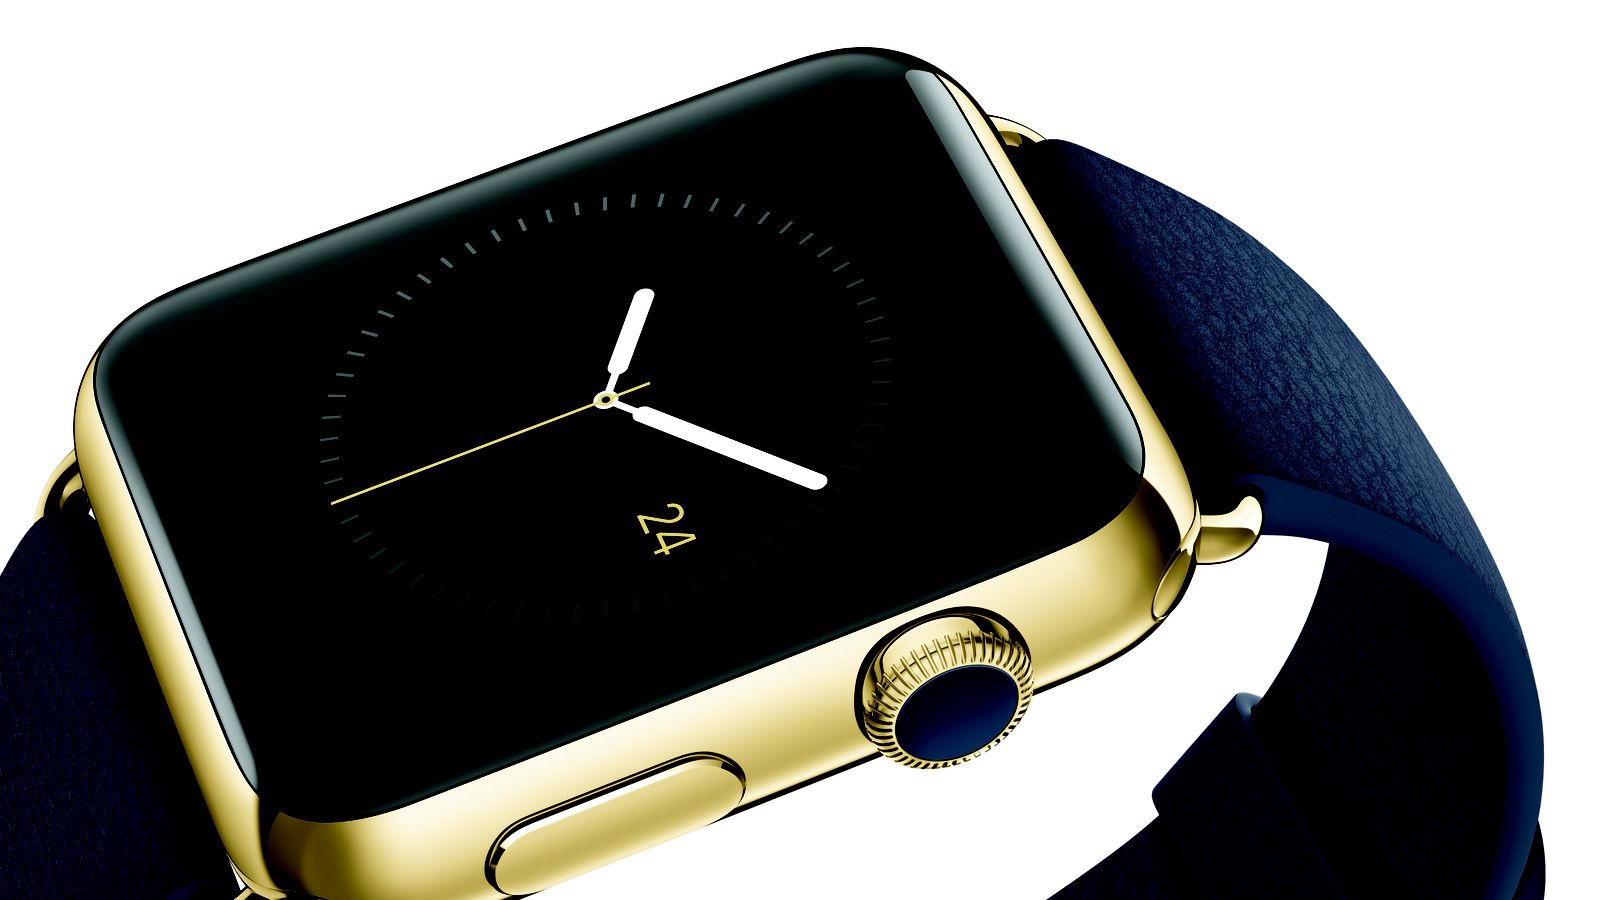 Известный производитель швейцарских часов скопировал дизайн Apple Watch